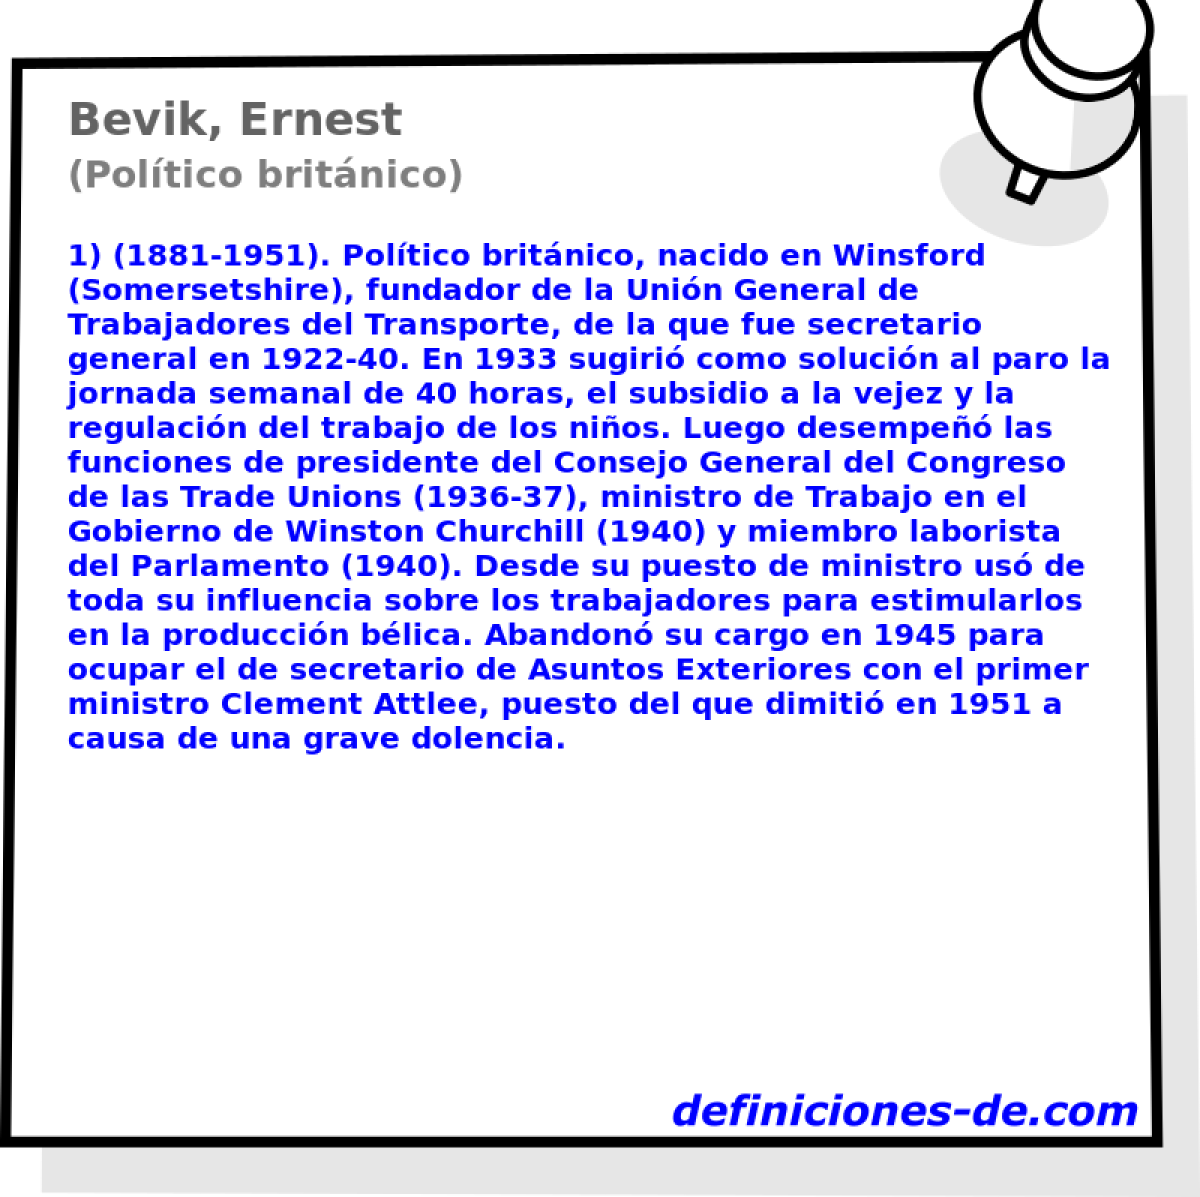 Bevik, Ernest (Poltico britnico)